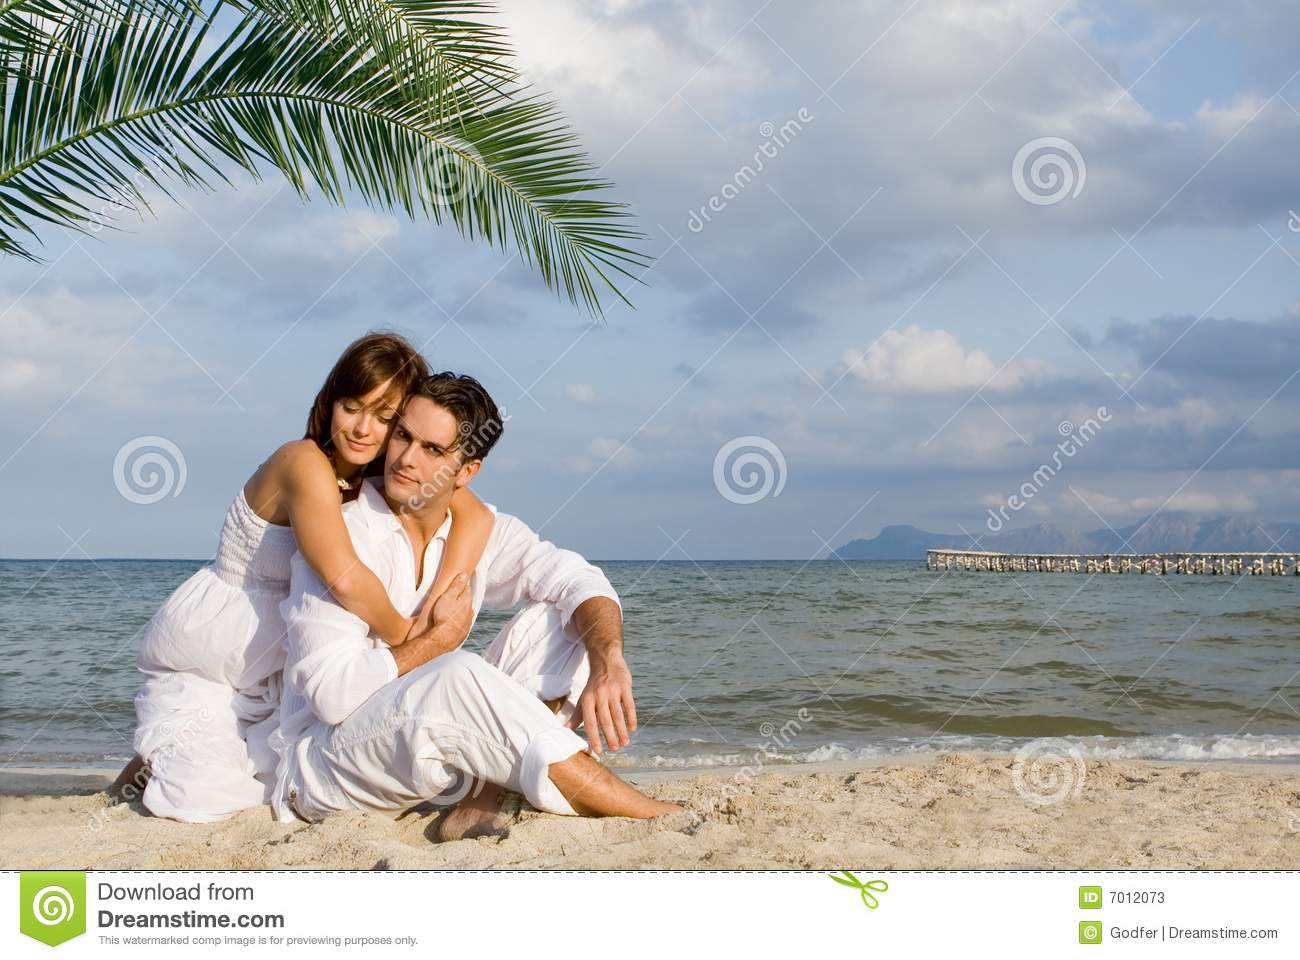 honeymoon-couple-7012073.jpg